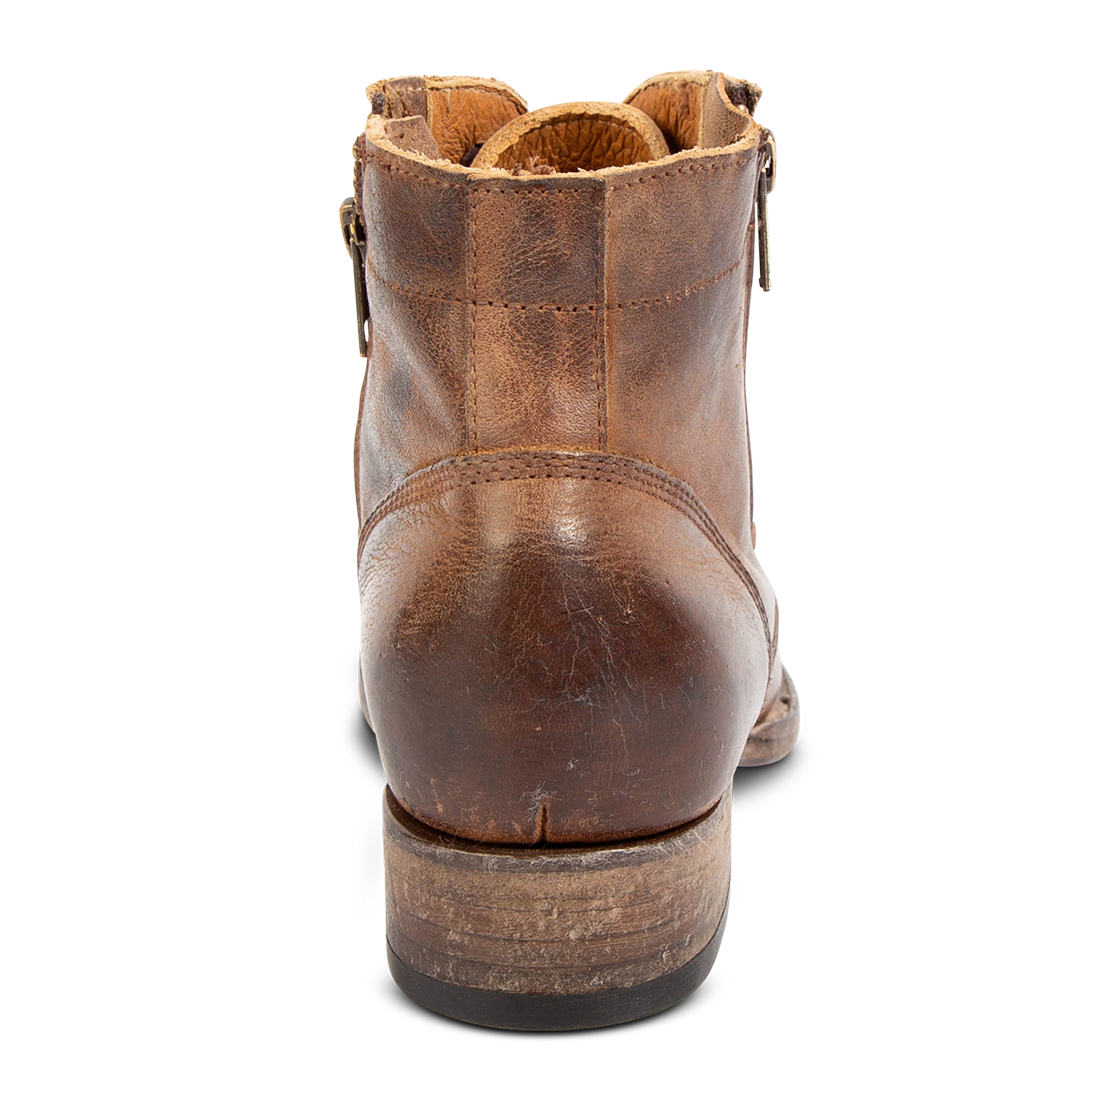 Back view showing FREEBIRD women's Rafter cognac leather bootie low heel